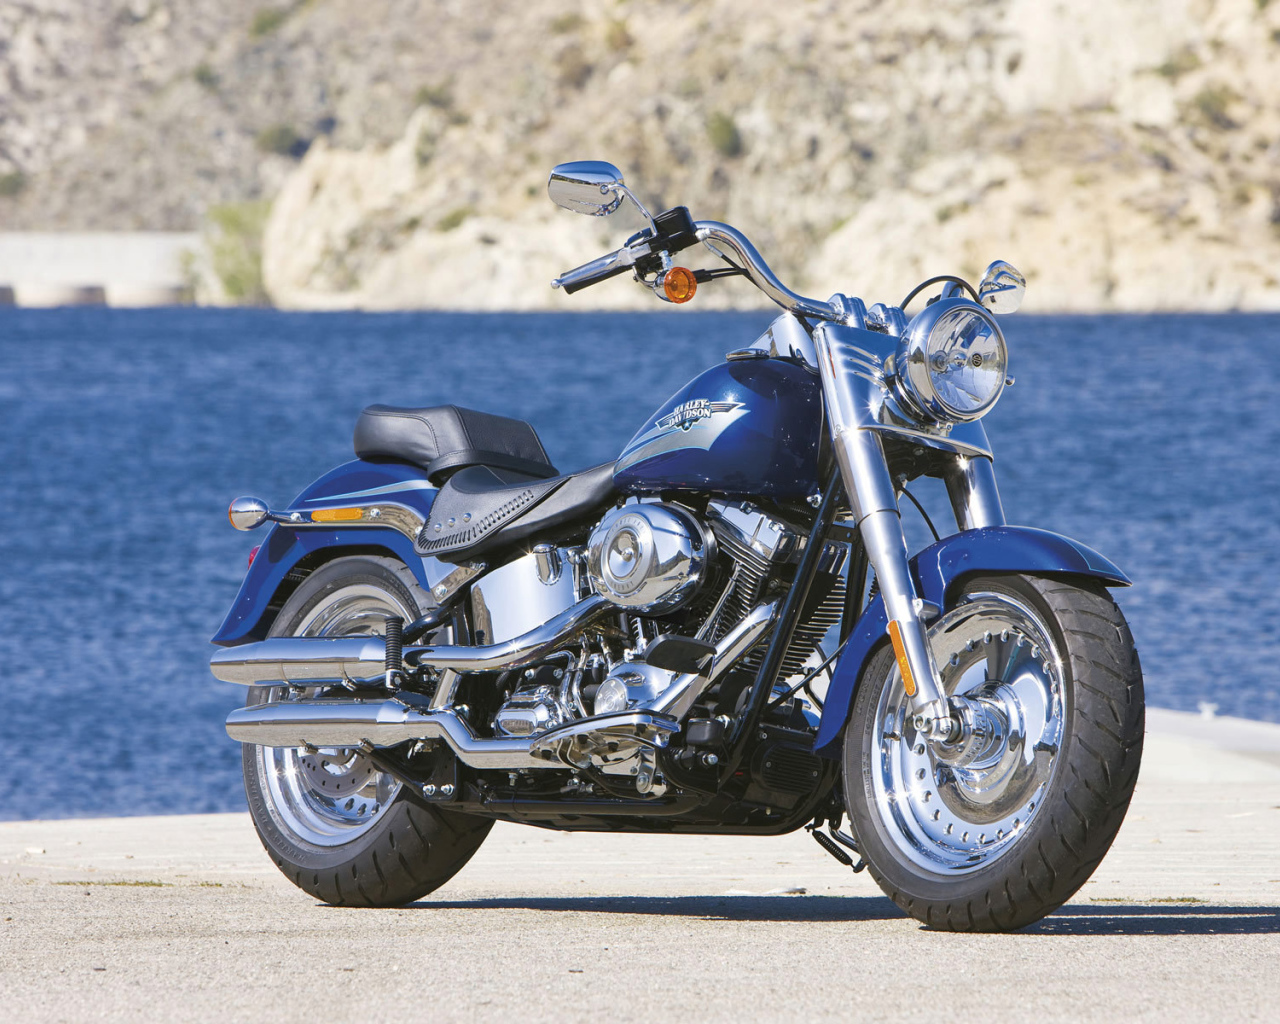 Популярный мотоцикл Harley-Davidson Fat Boy